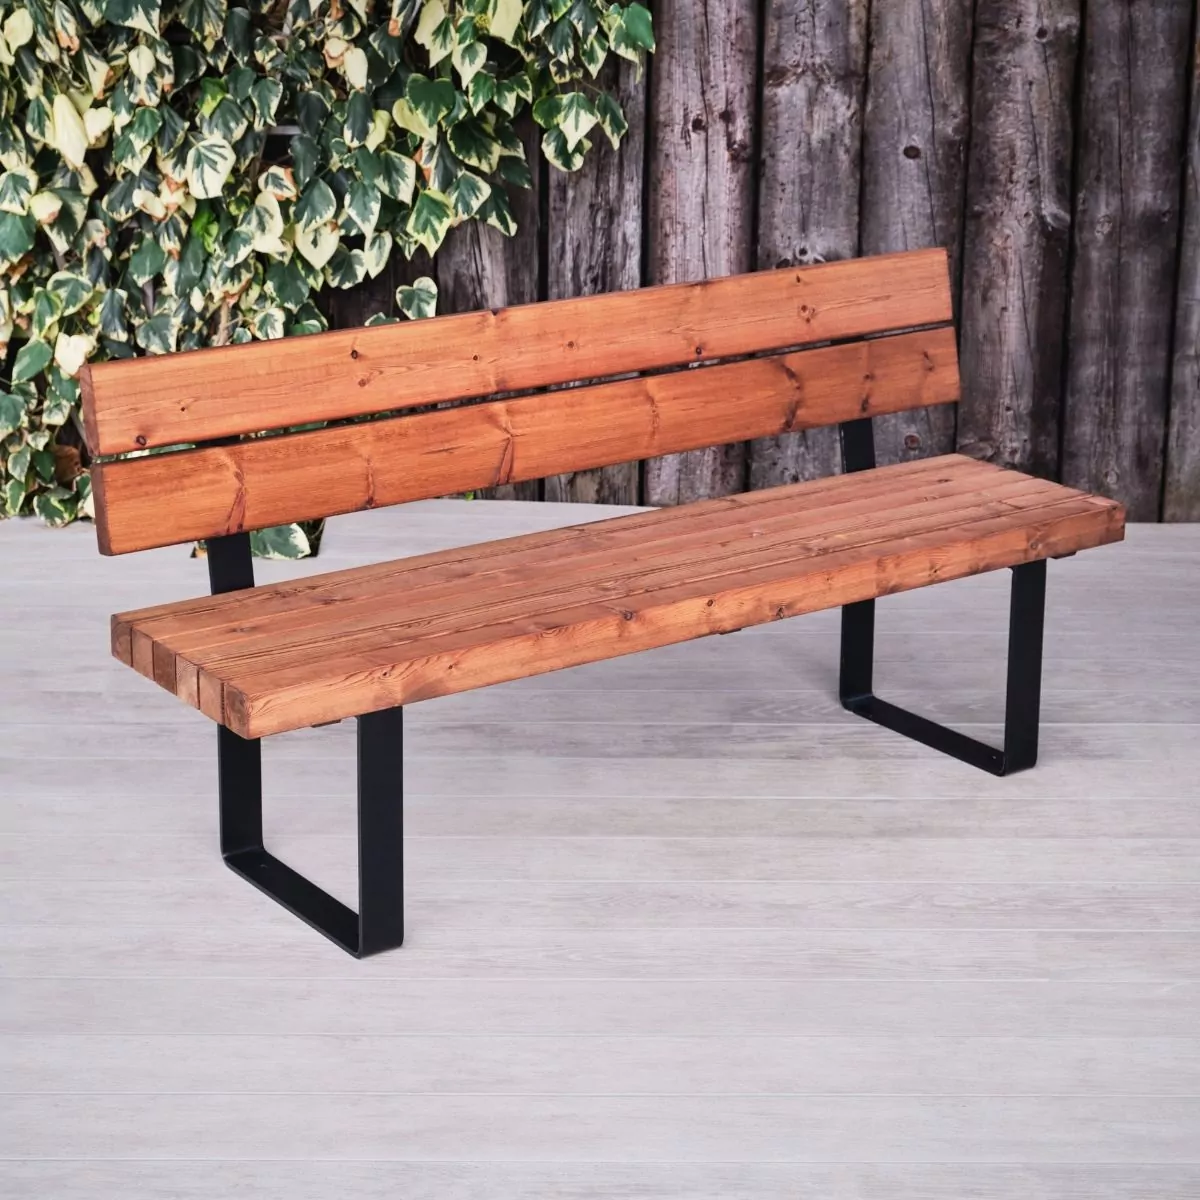 Sherwood Indoor & Outdoor Wood & Metal Industrial Outdoor Commercial Bench with Back